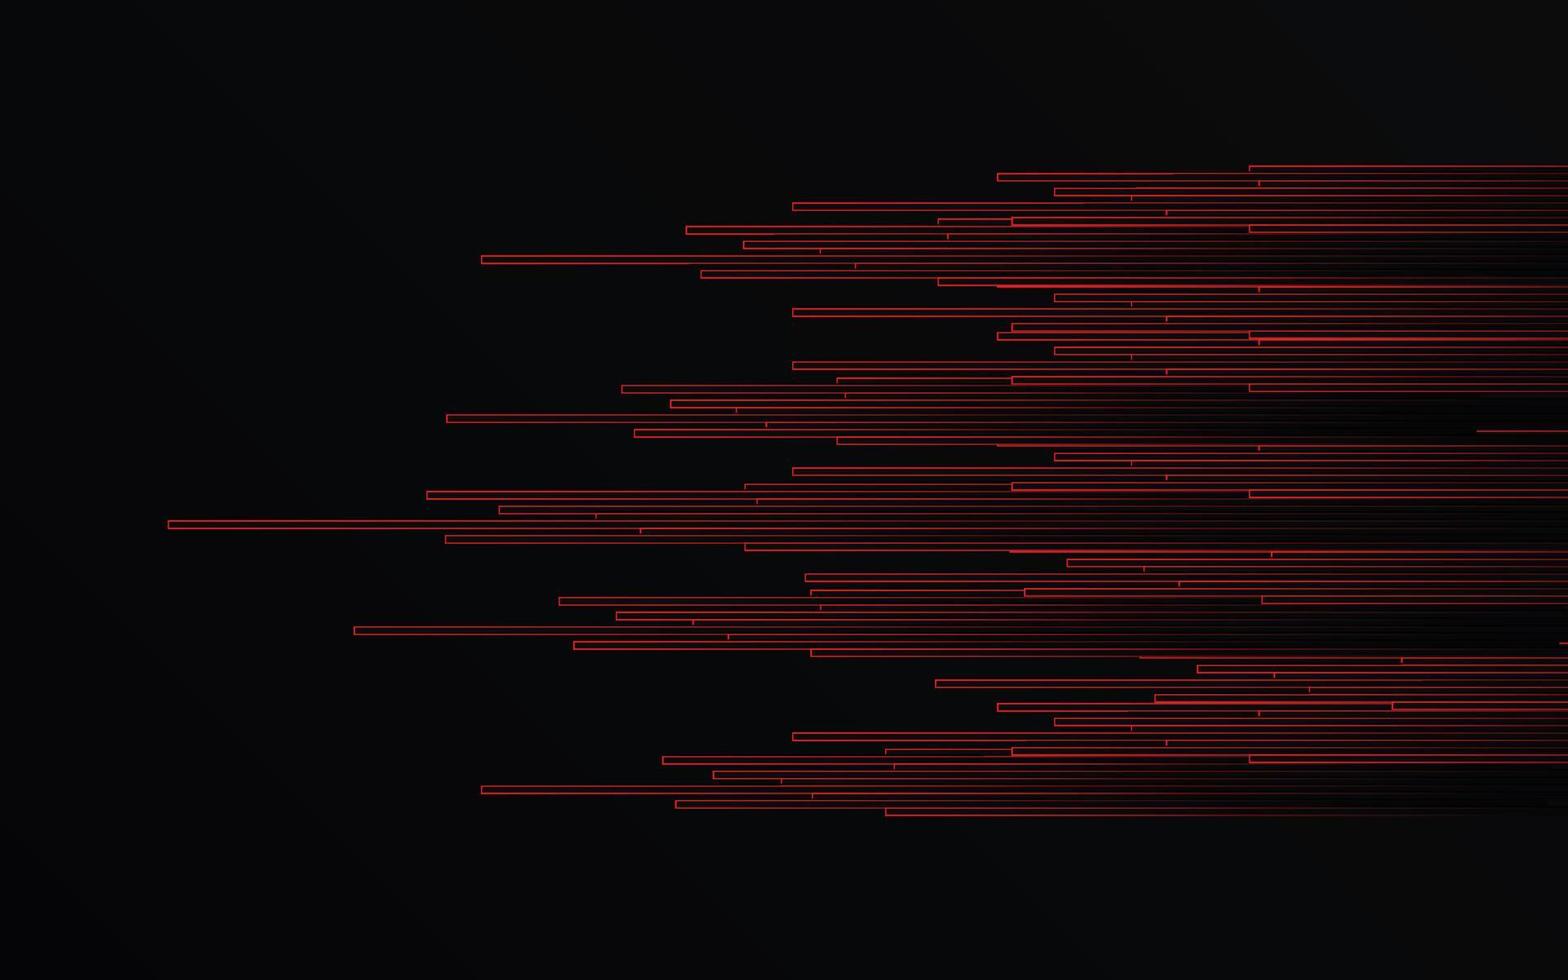 linhas de luz vermelha abstratas zoom de velocidade do tubo na tecnologia de fundo preto vetor